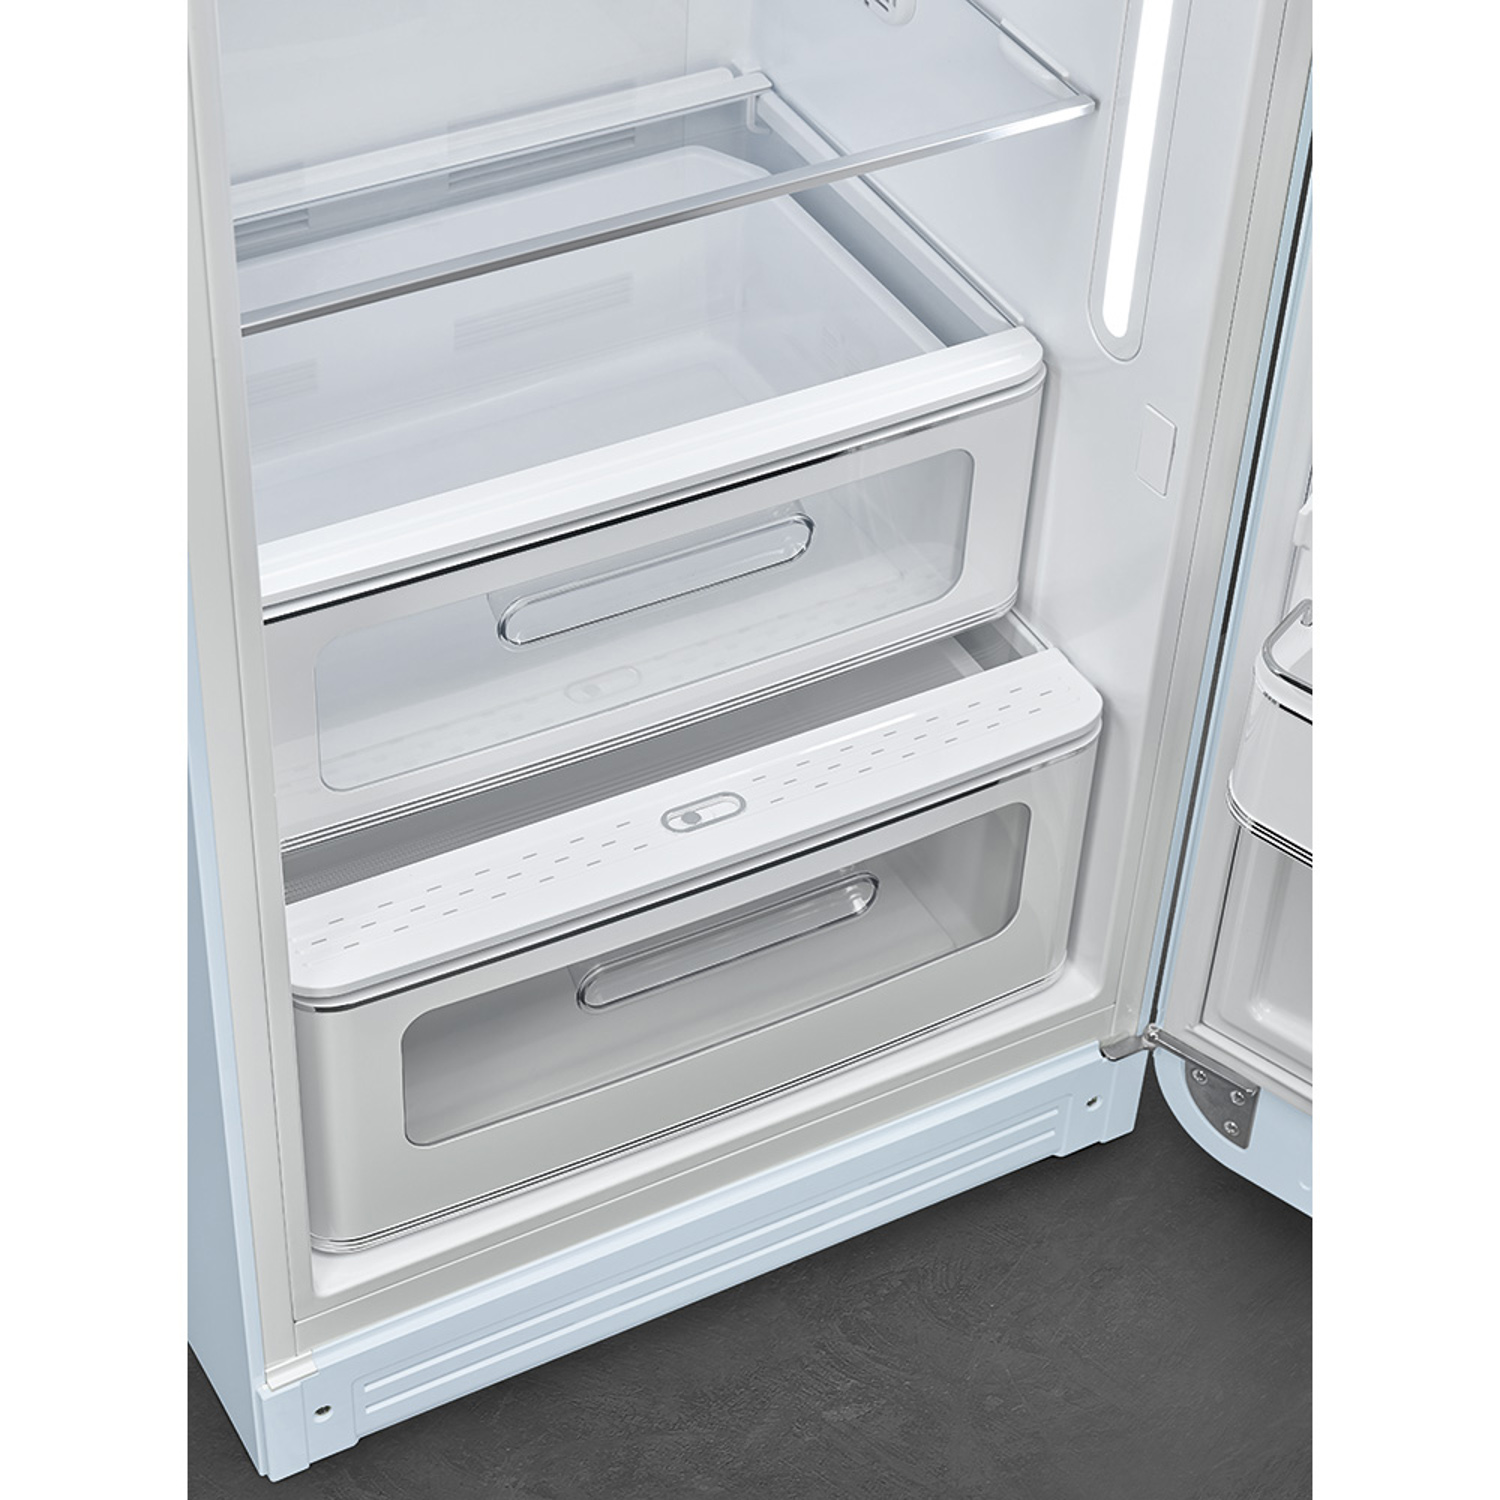 Vệ sinh tủ lạnh thường xuyên để đảm bảo thẩm mỹ, an toàn và hiệu suất hoạt động của tủ